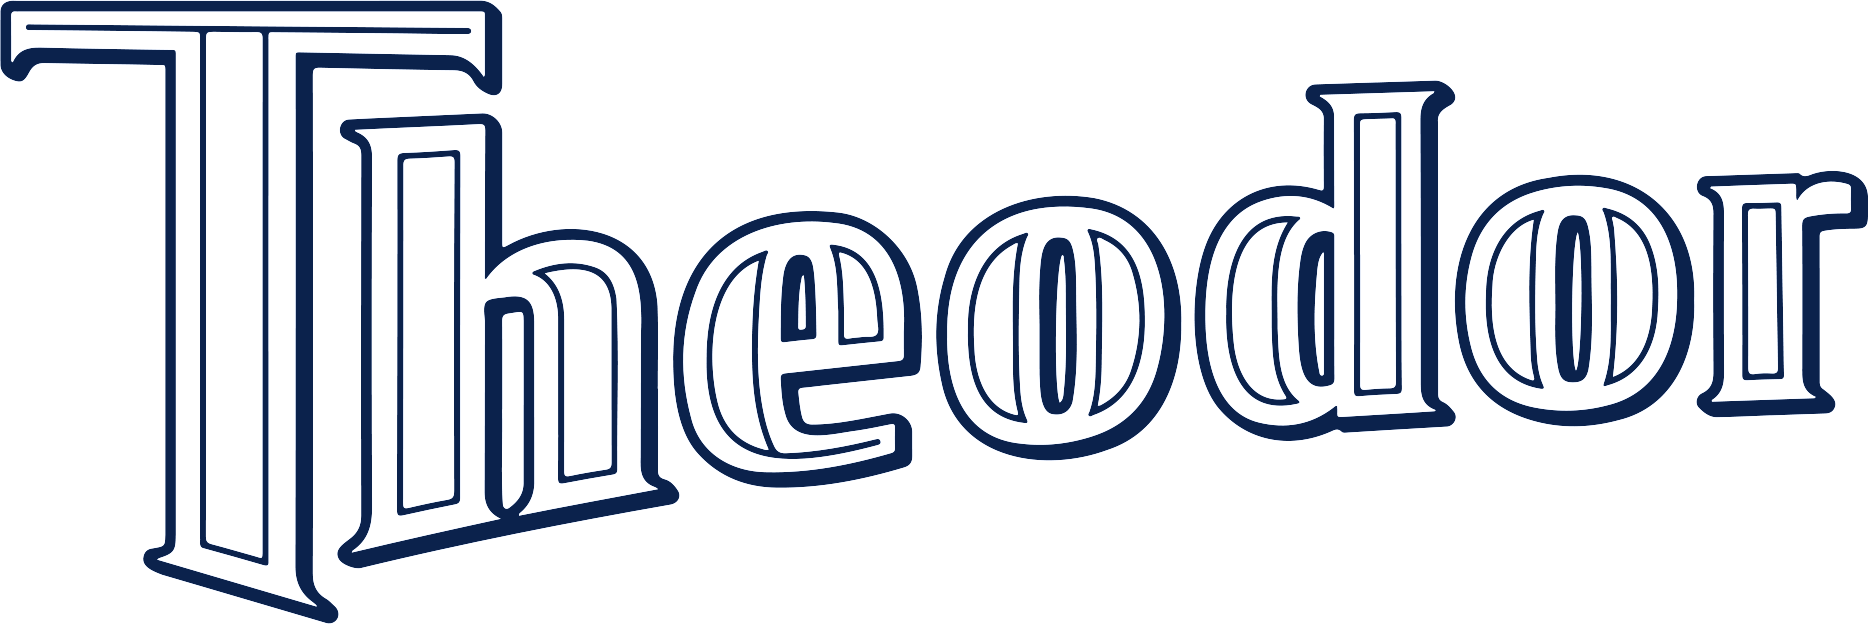 Theodor Logo blau